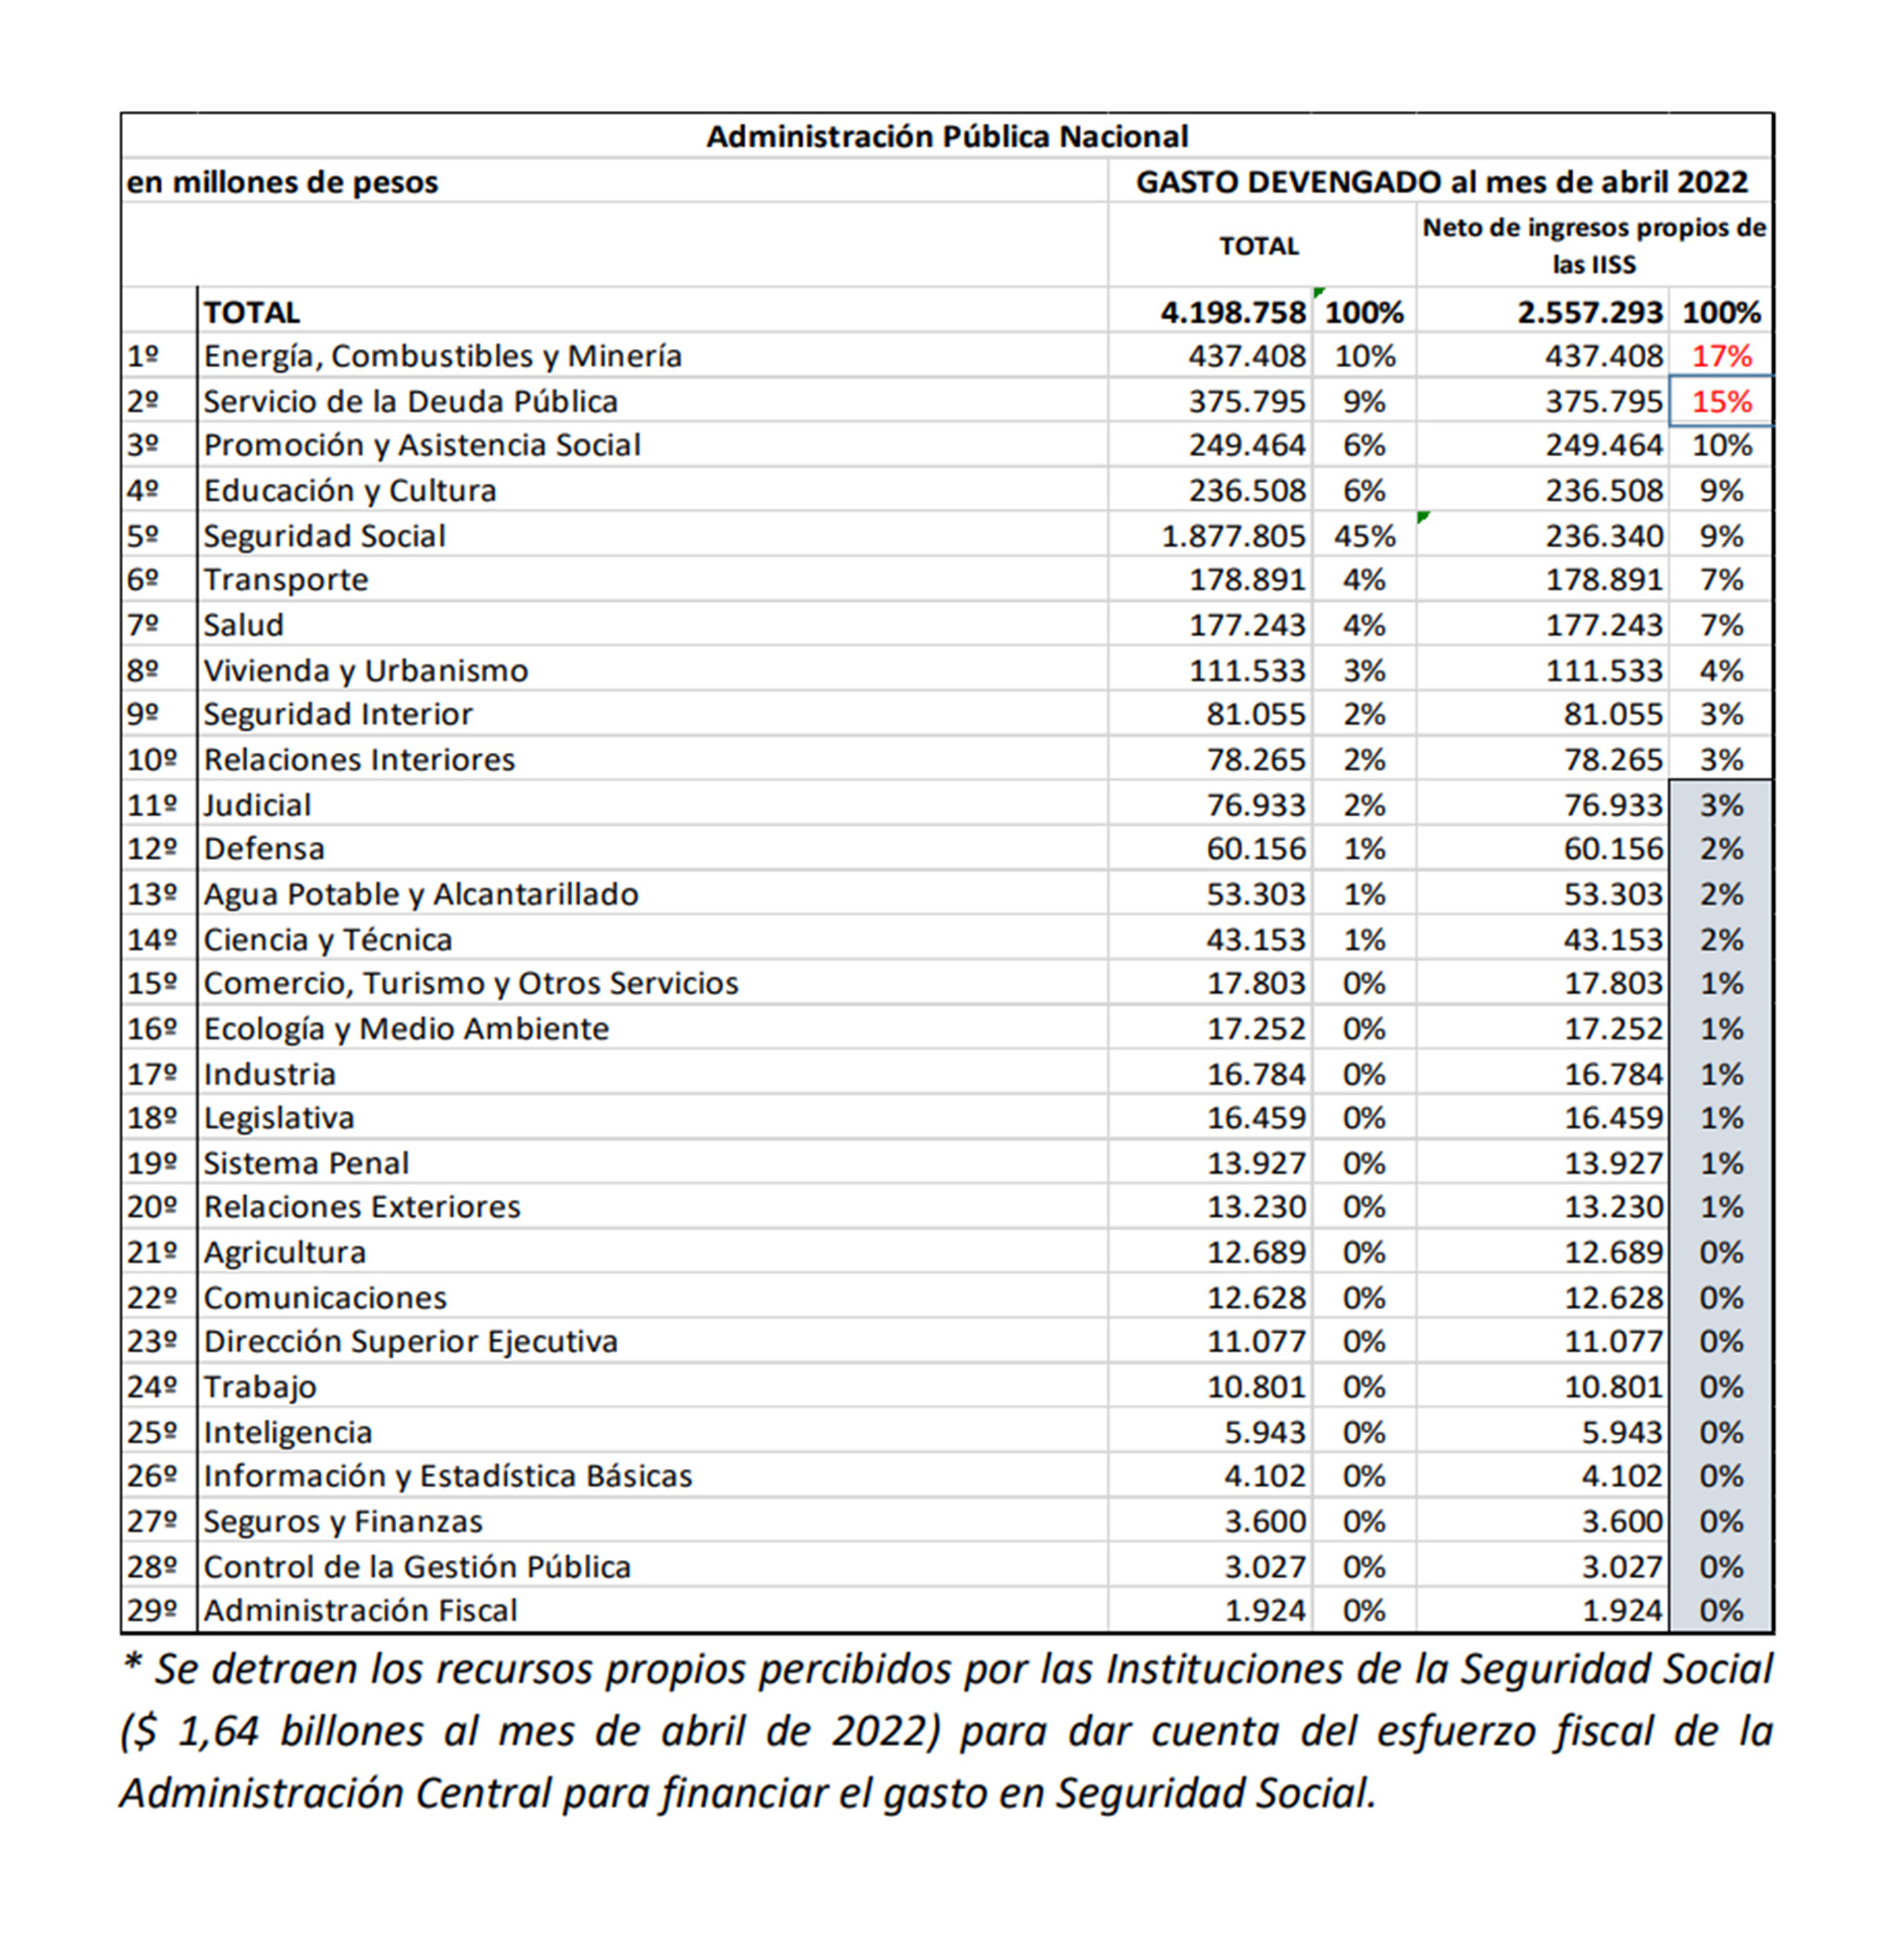 La planilla muestra que los pagos de los dos primeros ítems (subsidios y deuda) superan los de los últimos 19, 